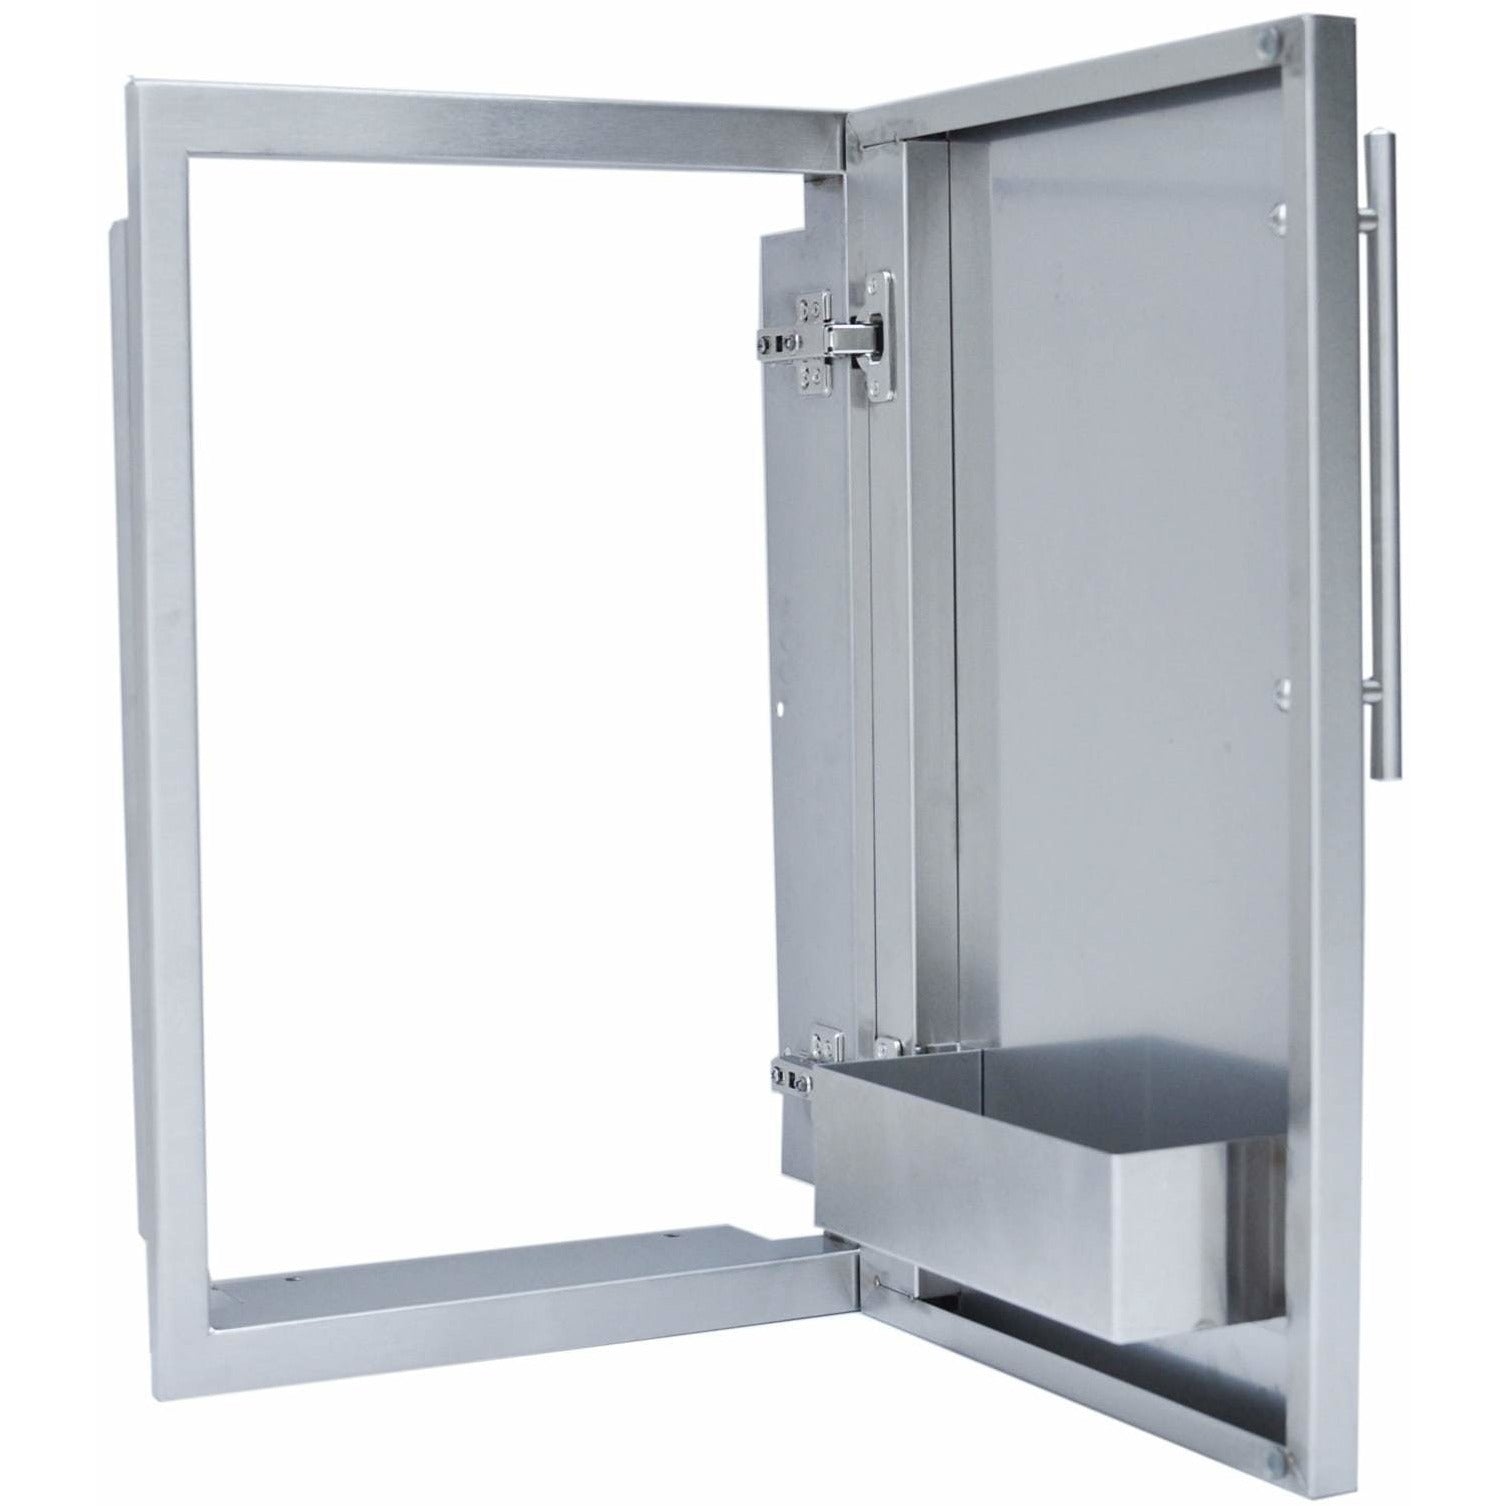 Sunstone 15 inch Designer Series Single Door DE-DVR15 - M&K Grills